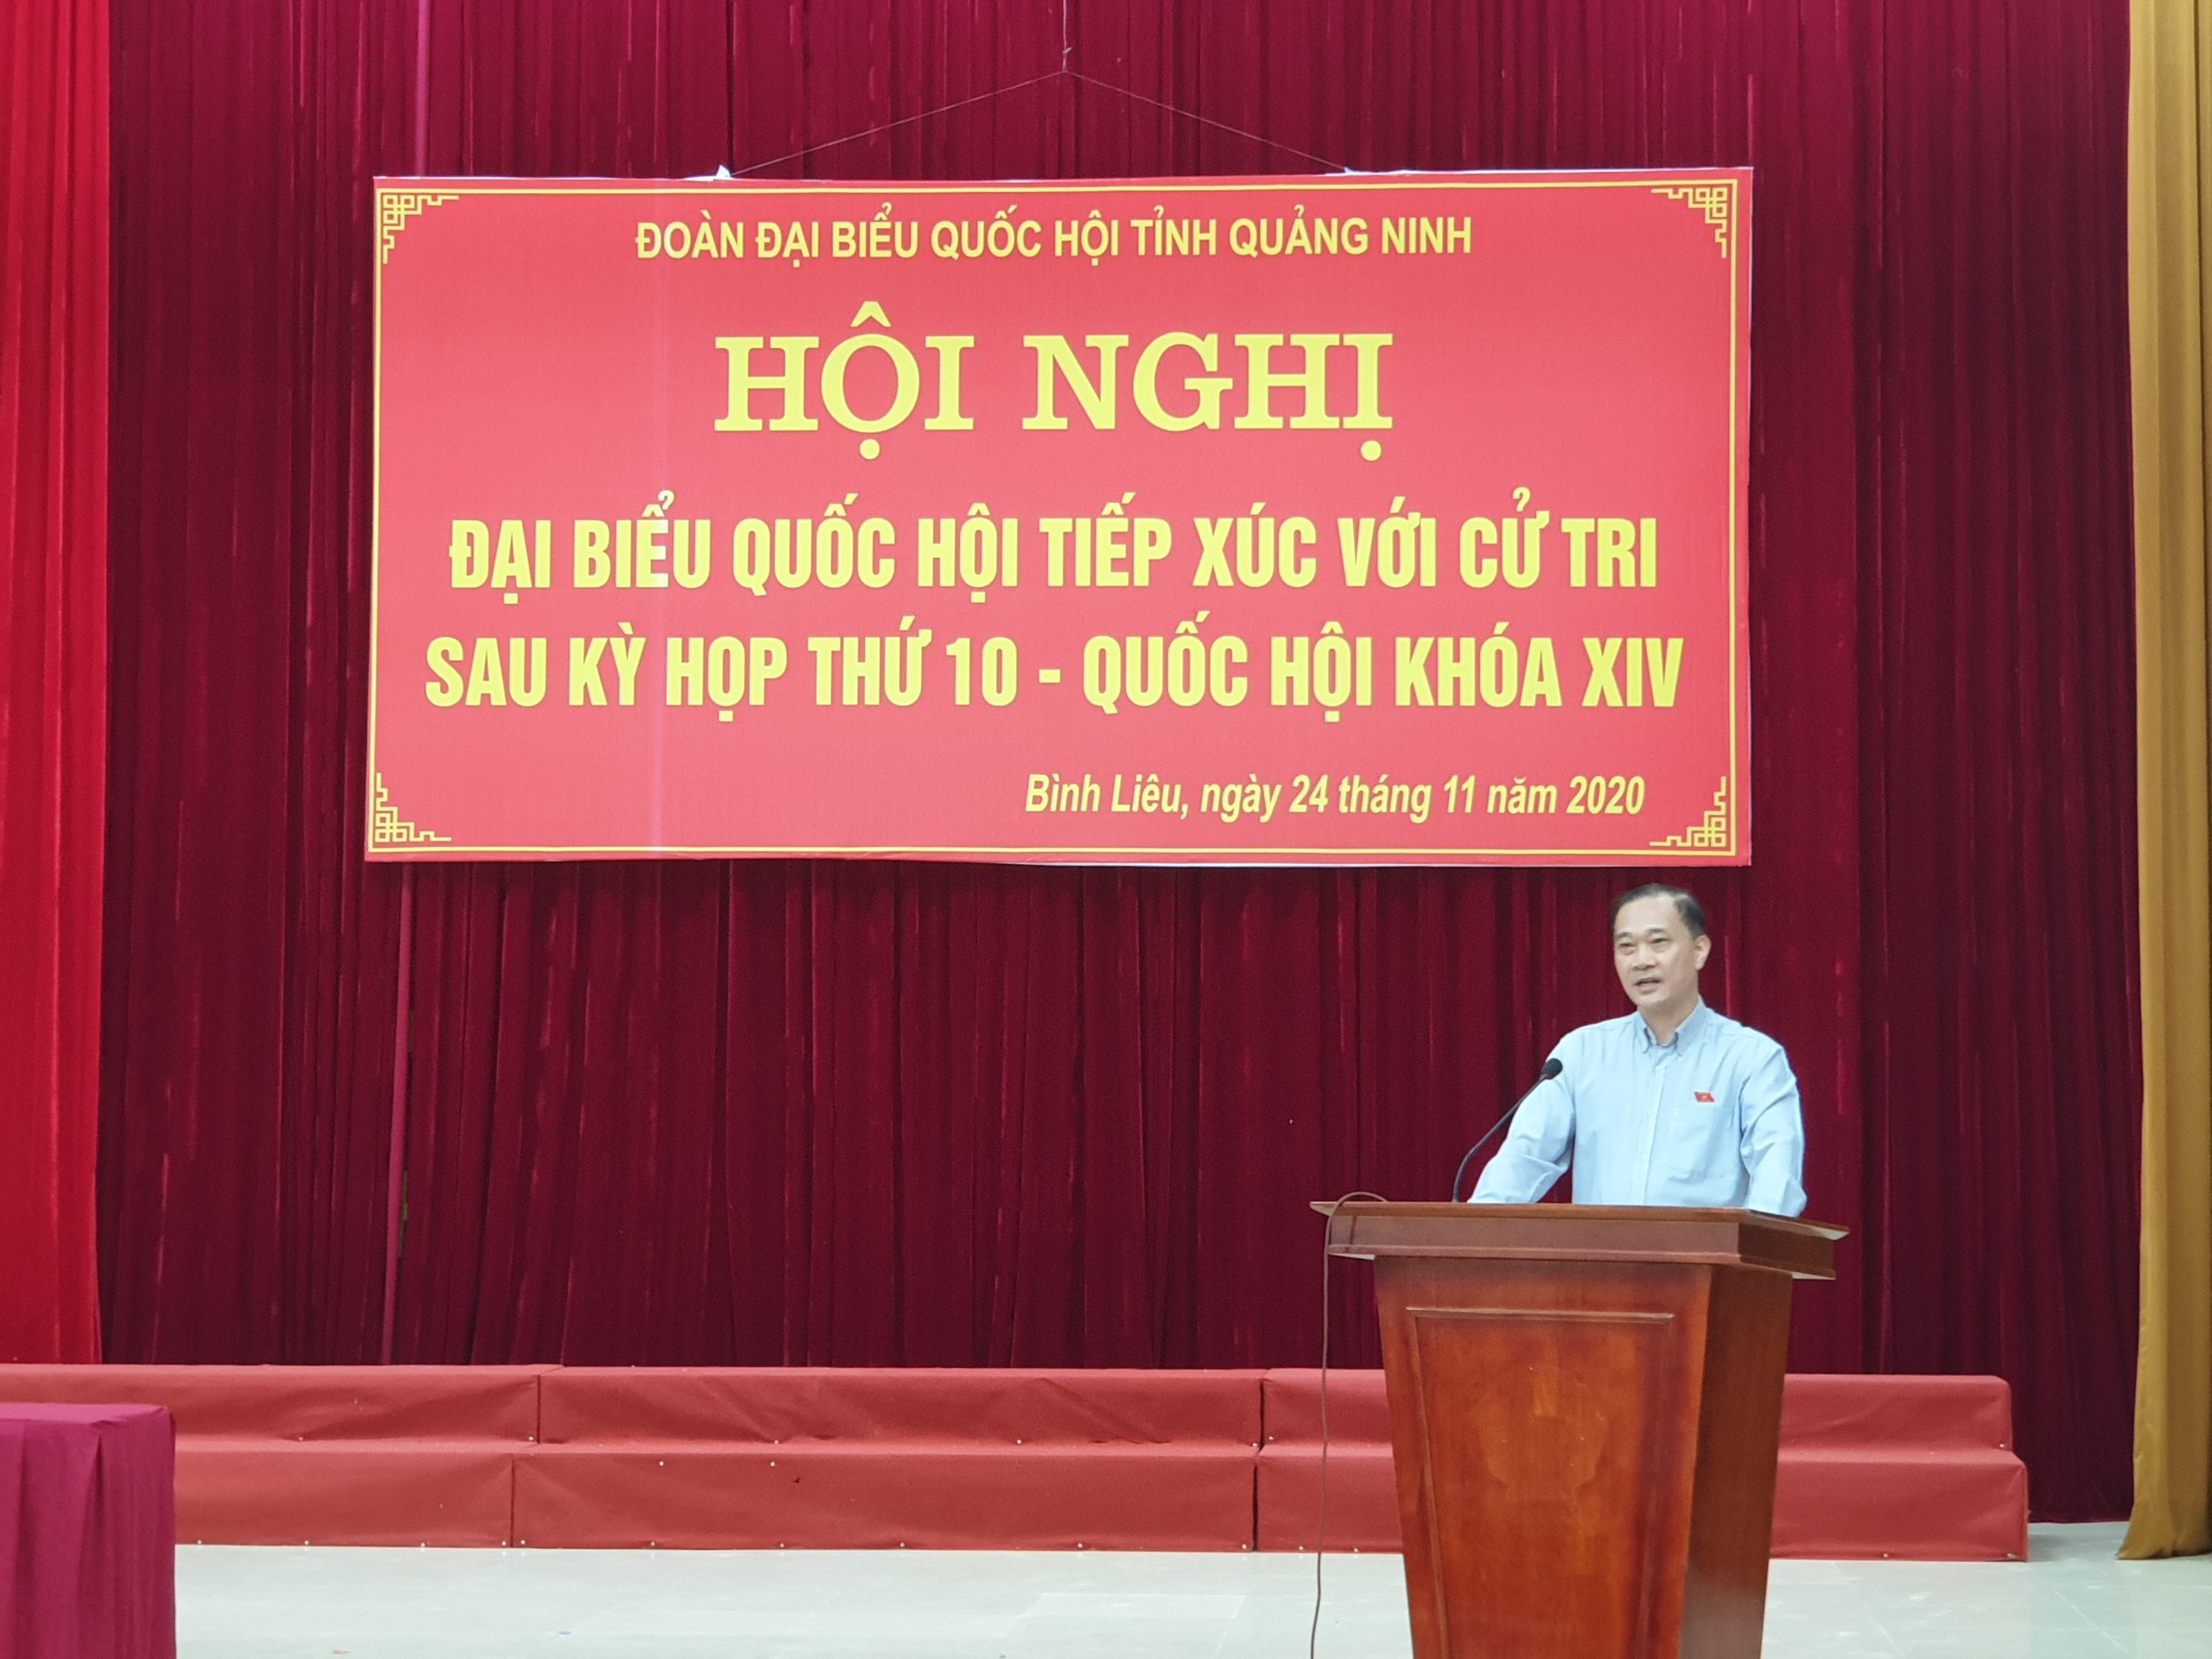 Đồng chí Vũ Hồng Thanh, Ủy viên Trung ương Đảng, Chủ nhiệm Ủy ban Kinh tế của Quốc hội, Đại biểu Quốc hội tỉnh Quảng Ninh thông tin tại buổi tiếp xúc cử tri.